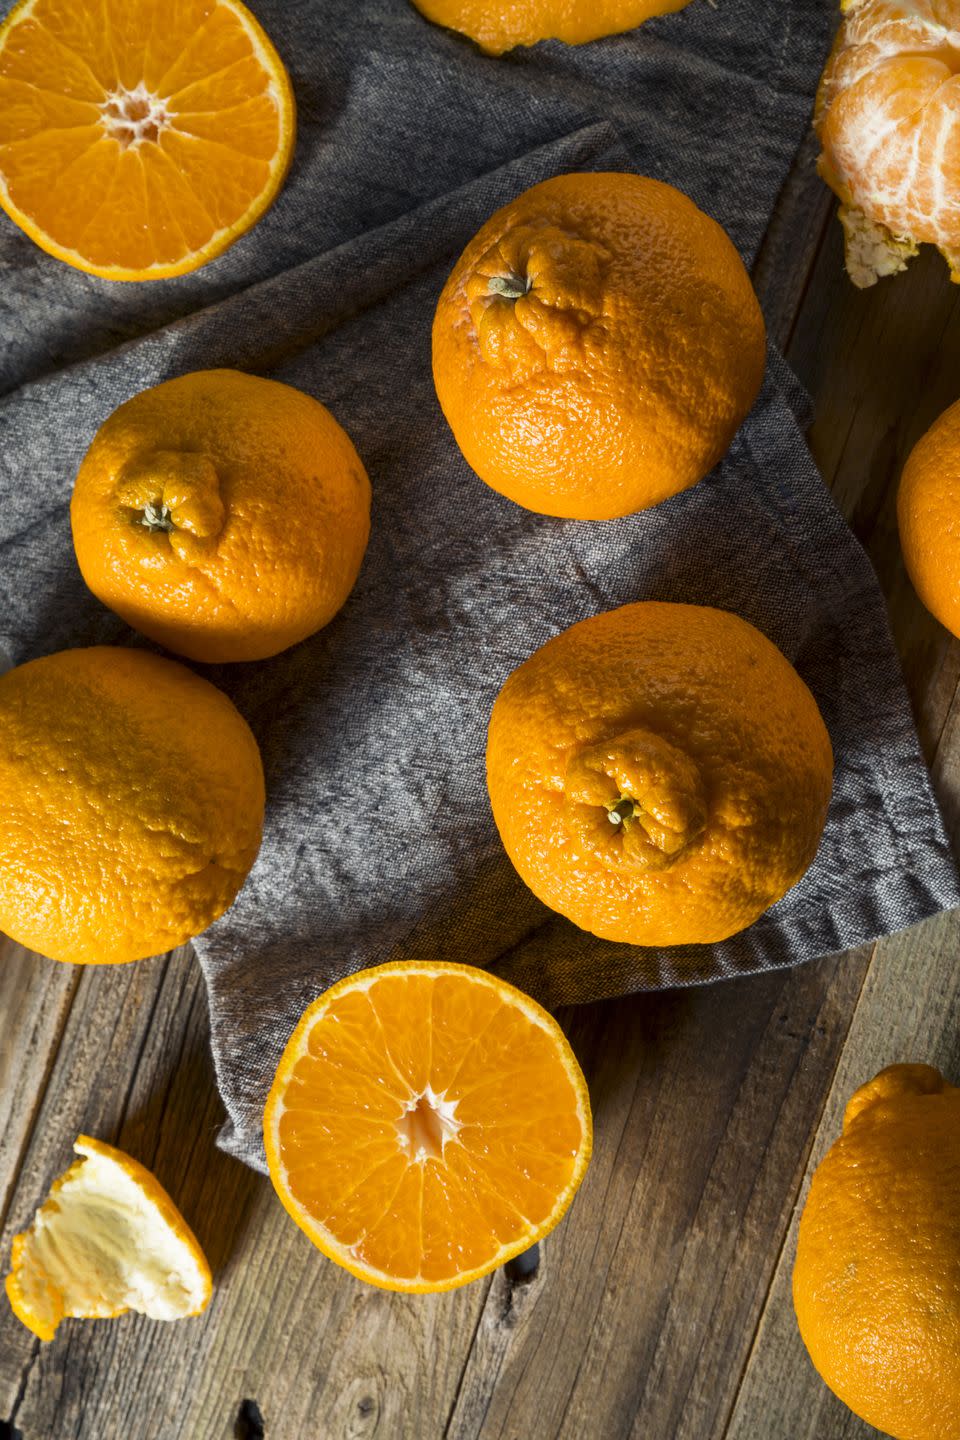 3) Sumo Citrus Oranges